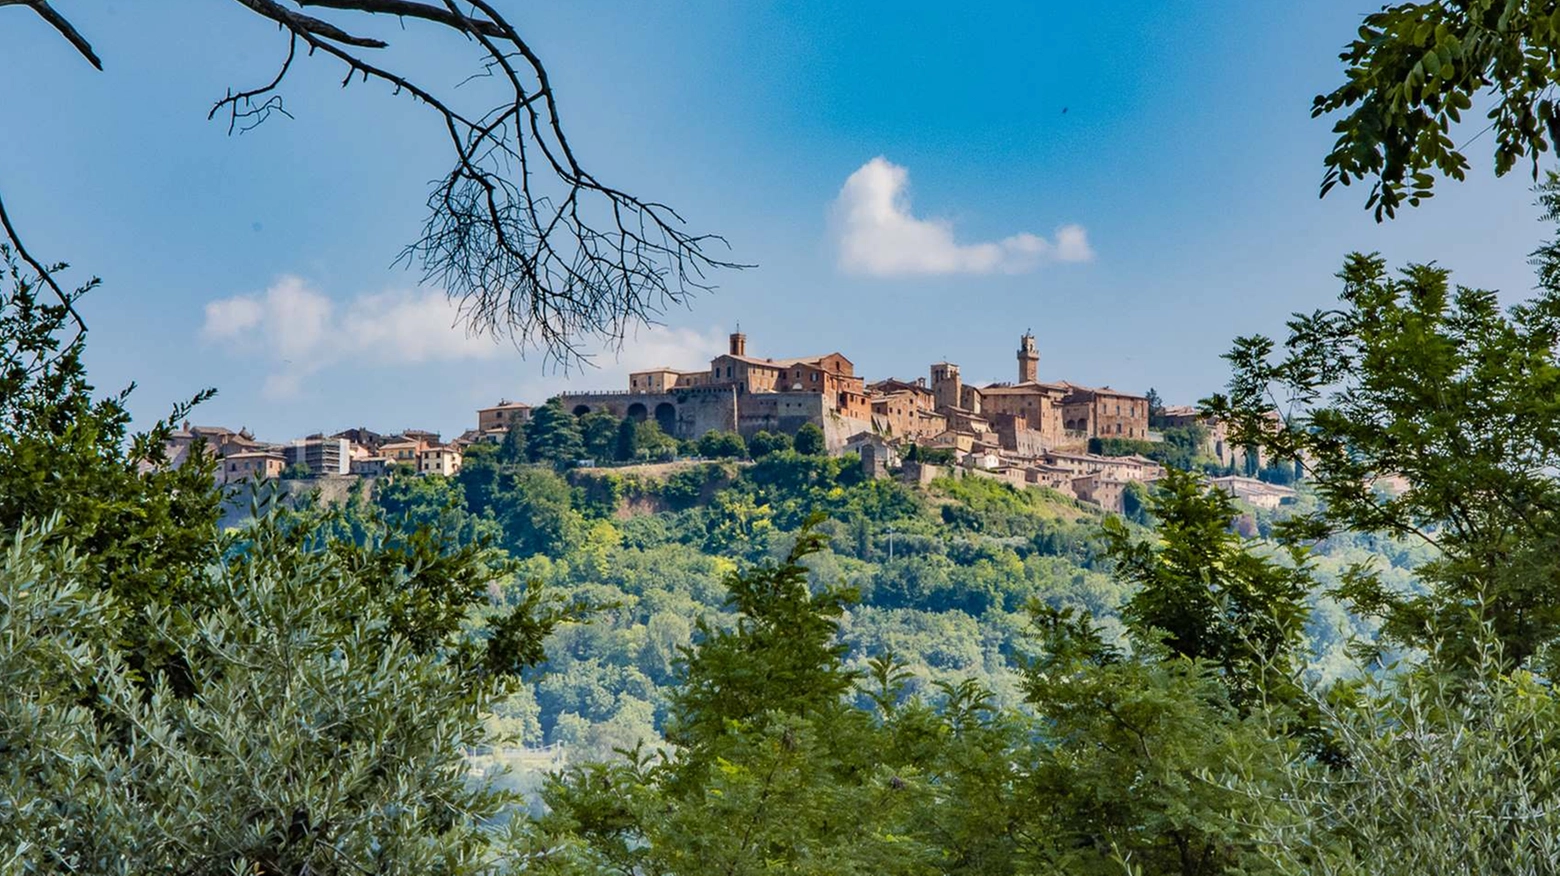 Il borgo toscano noto per l’omonimo vino vanta uno splendido centro storico e dintorni dai paesaggi idilliaci, tipicamente toscani. A Villa Talosa visite guidate e degustazioni